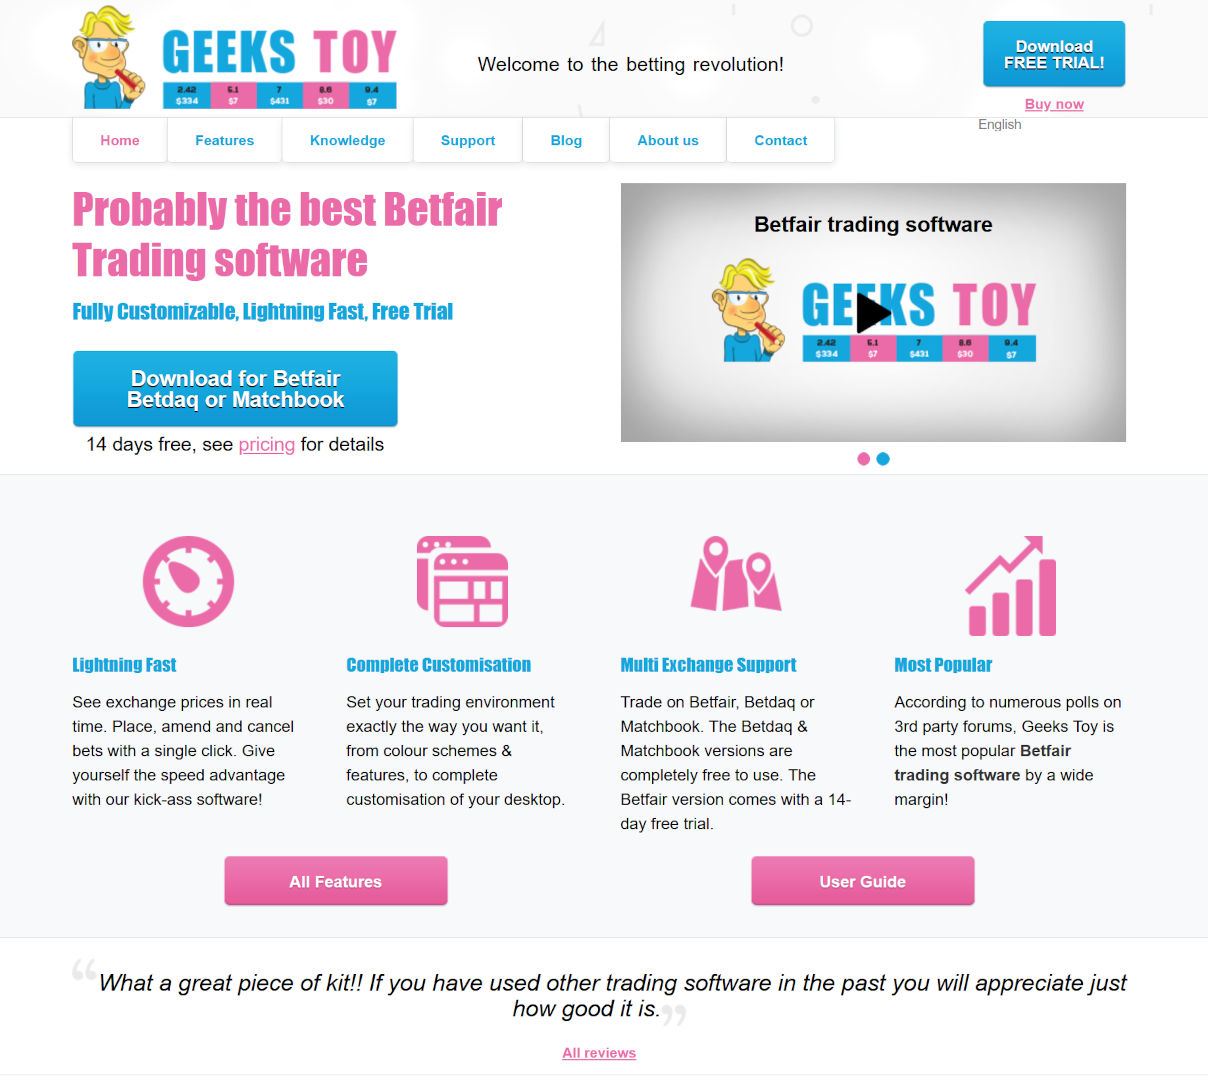 GeeksToy - Homepage